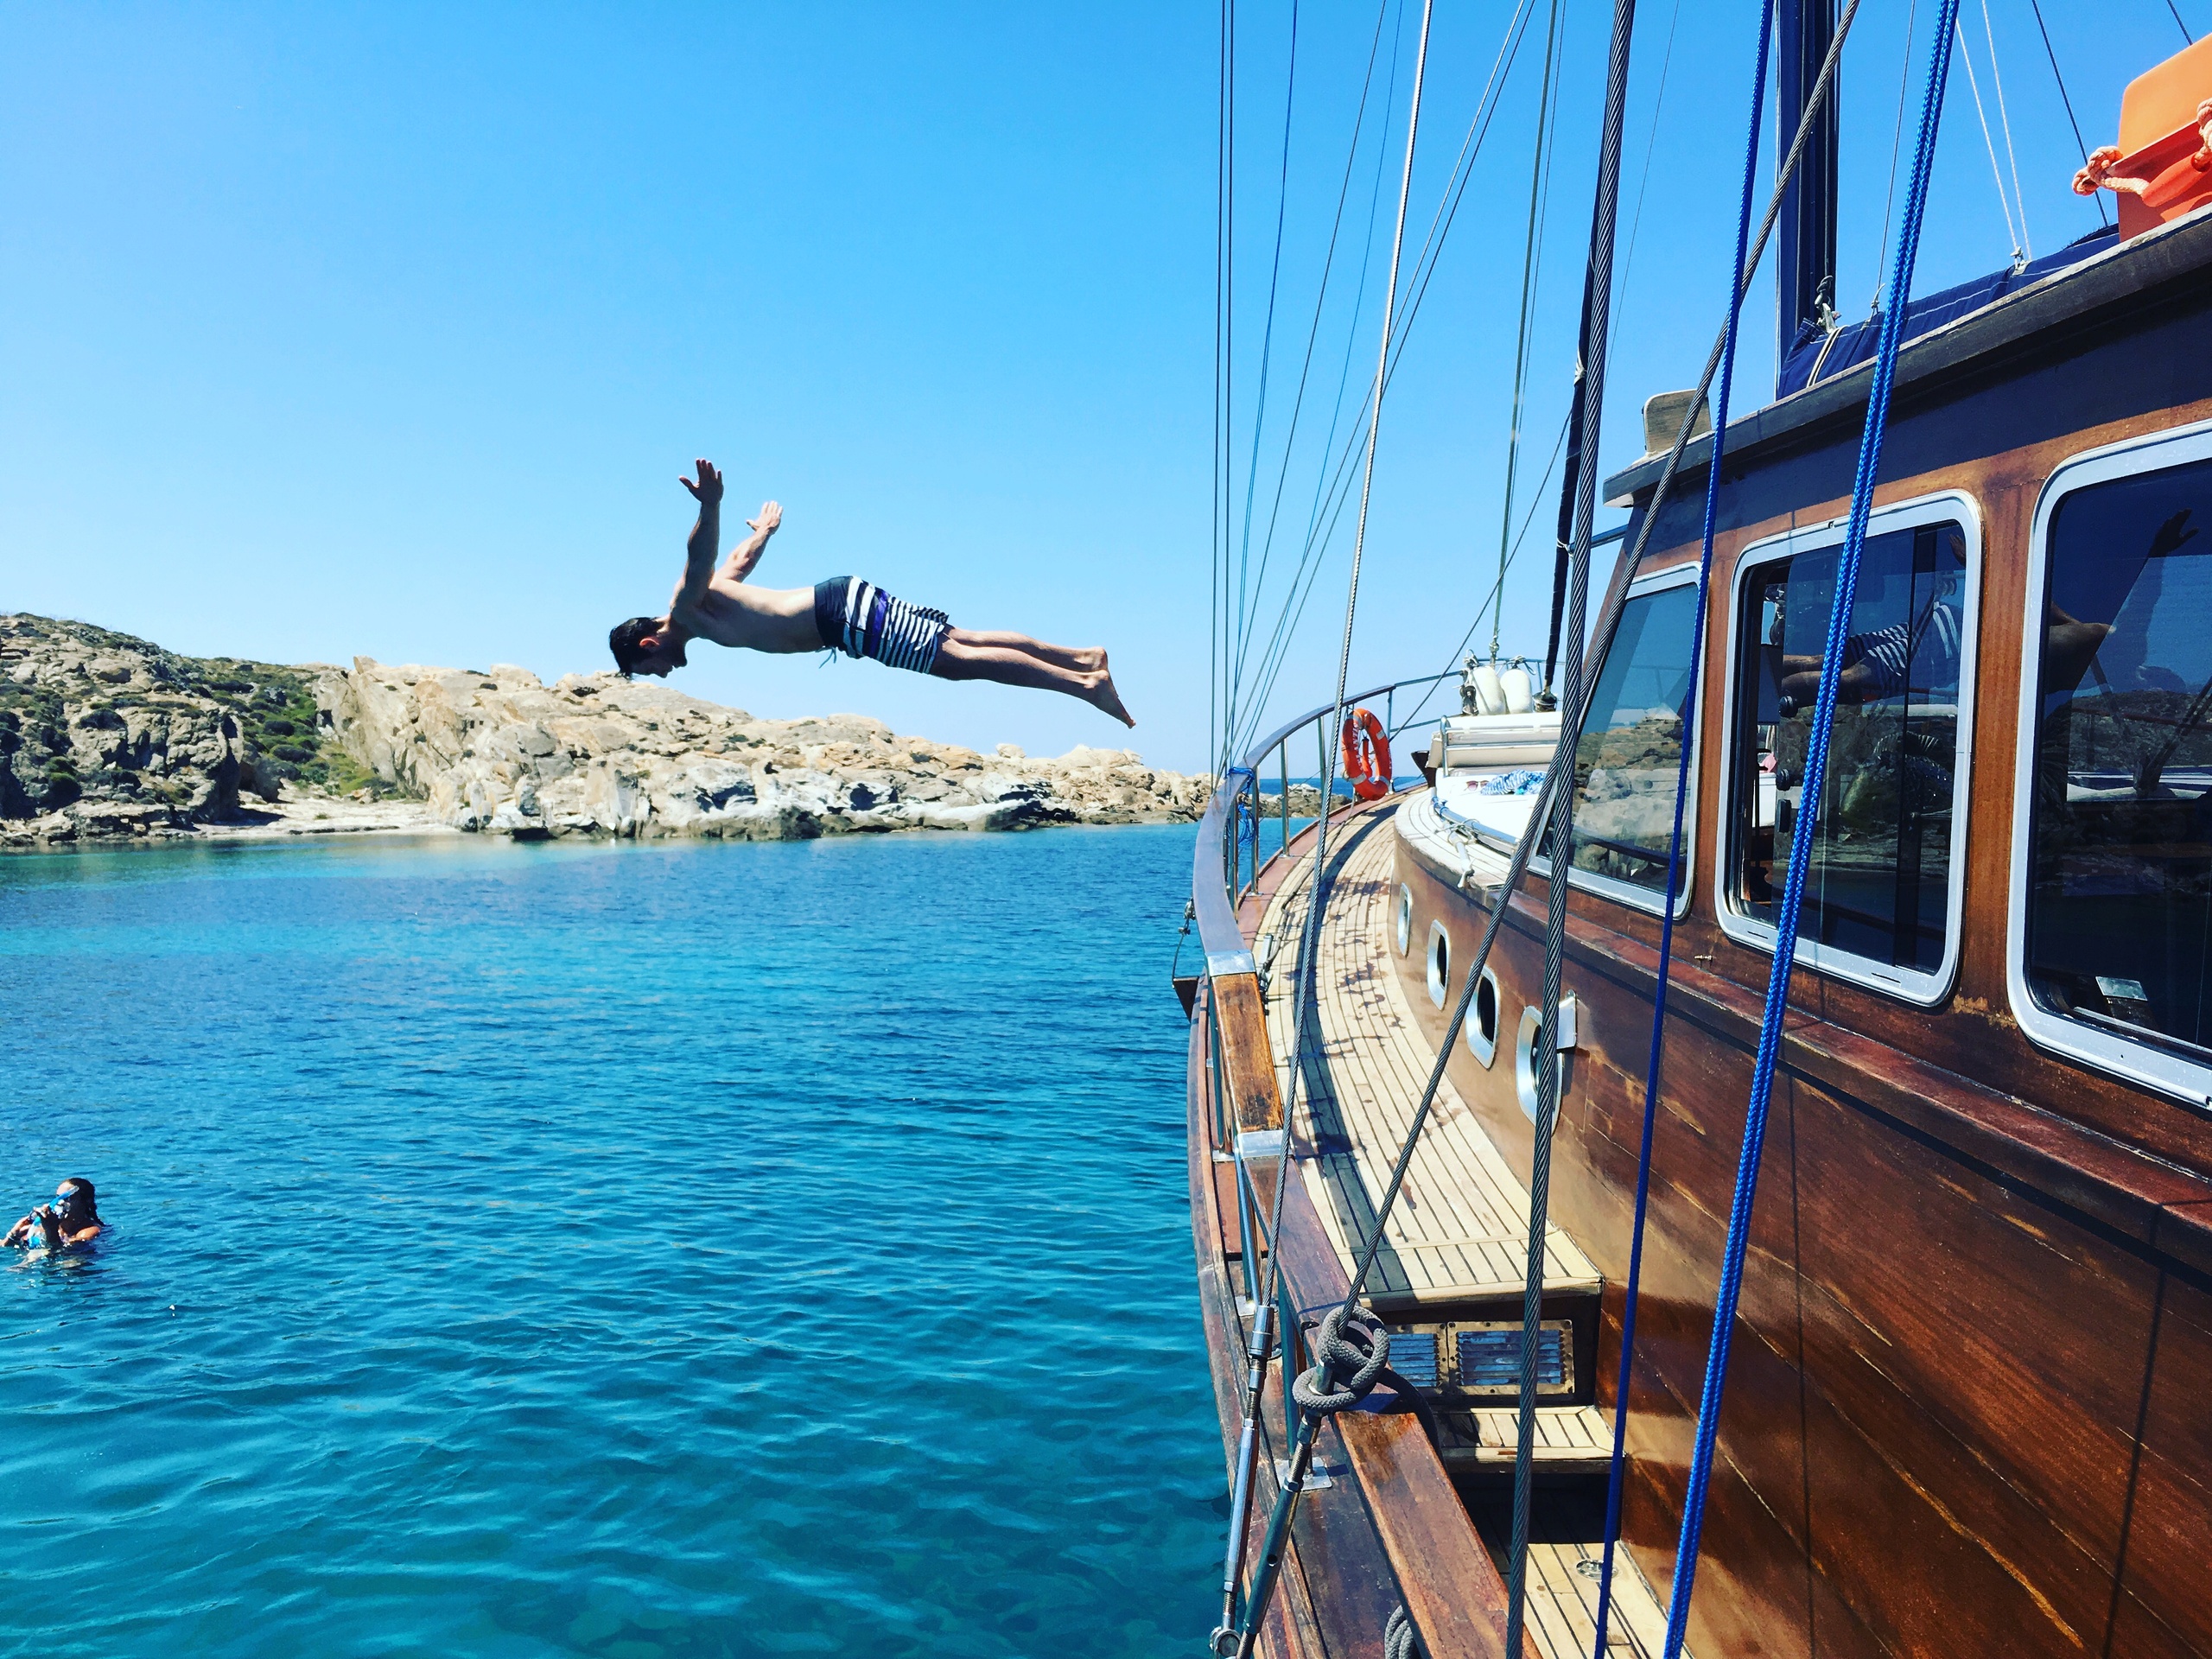 Private Boat Tour to Delos & Rhenia